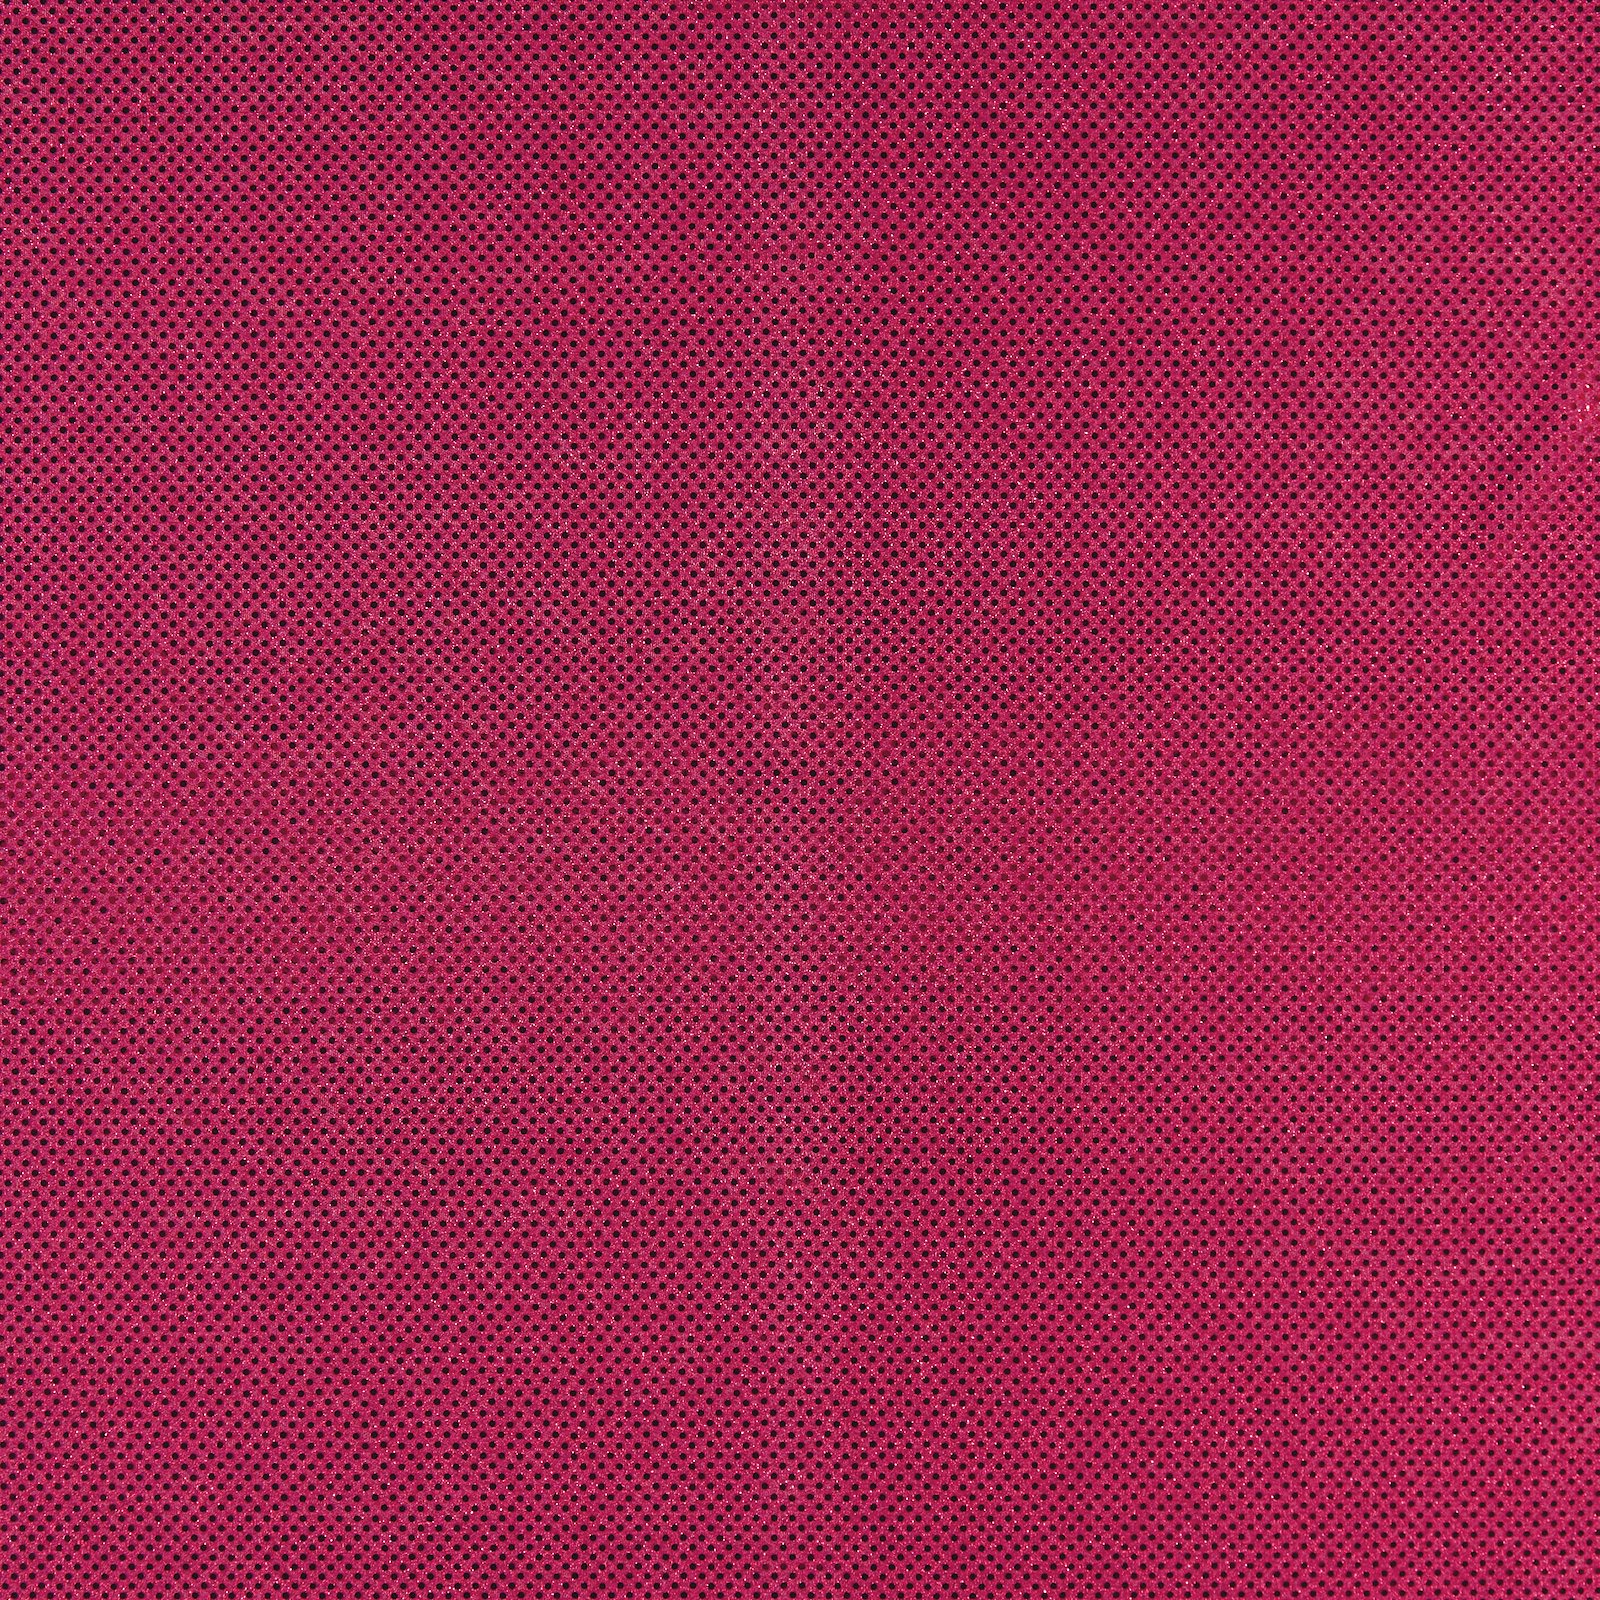 Strikk med folie paljetter rosa 3mm 203749_pack_solid